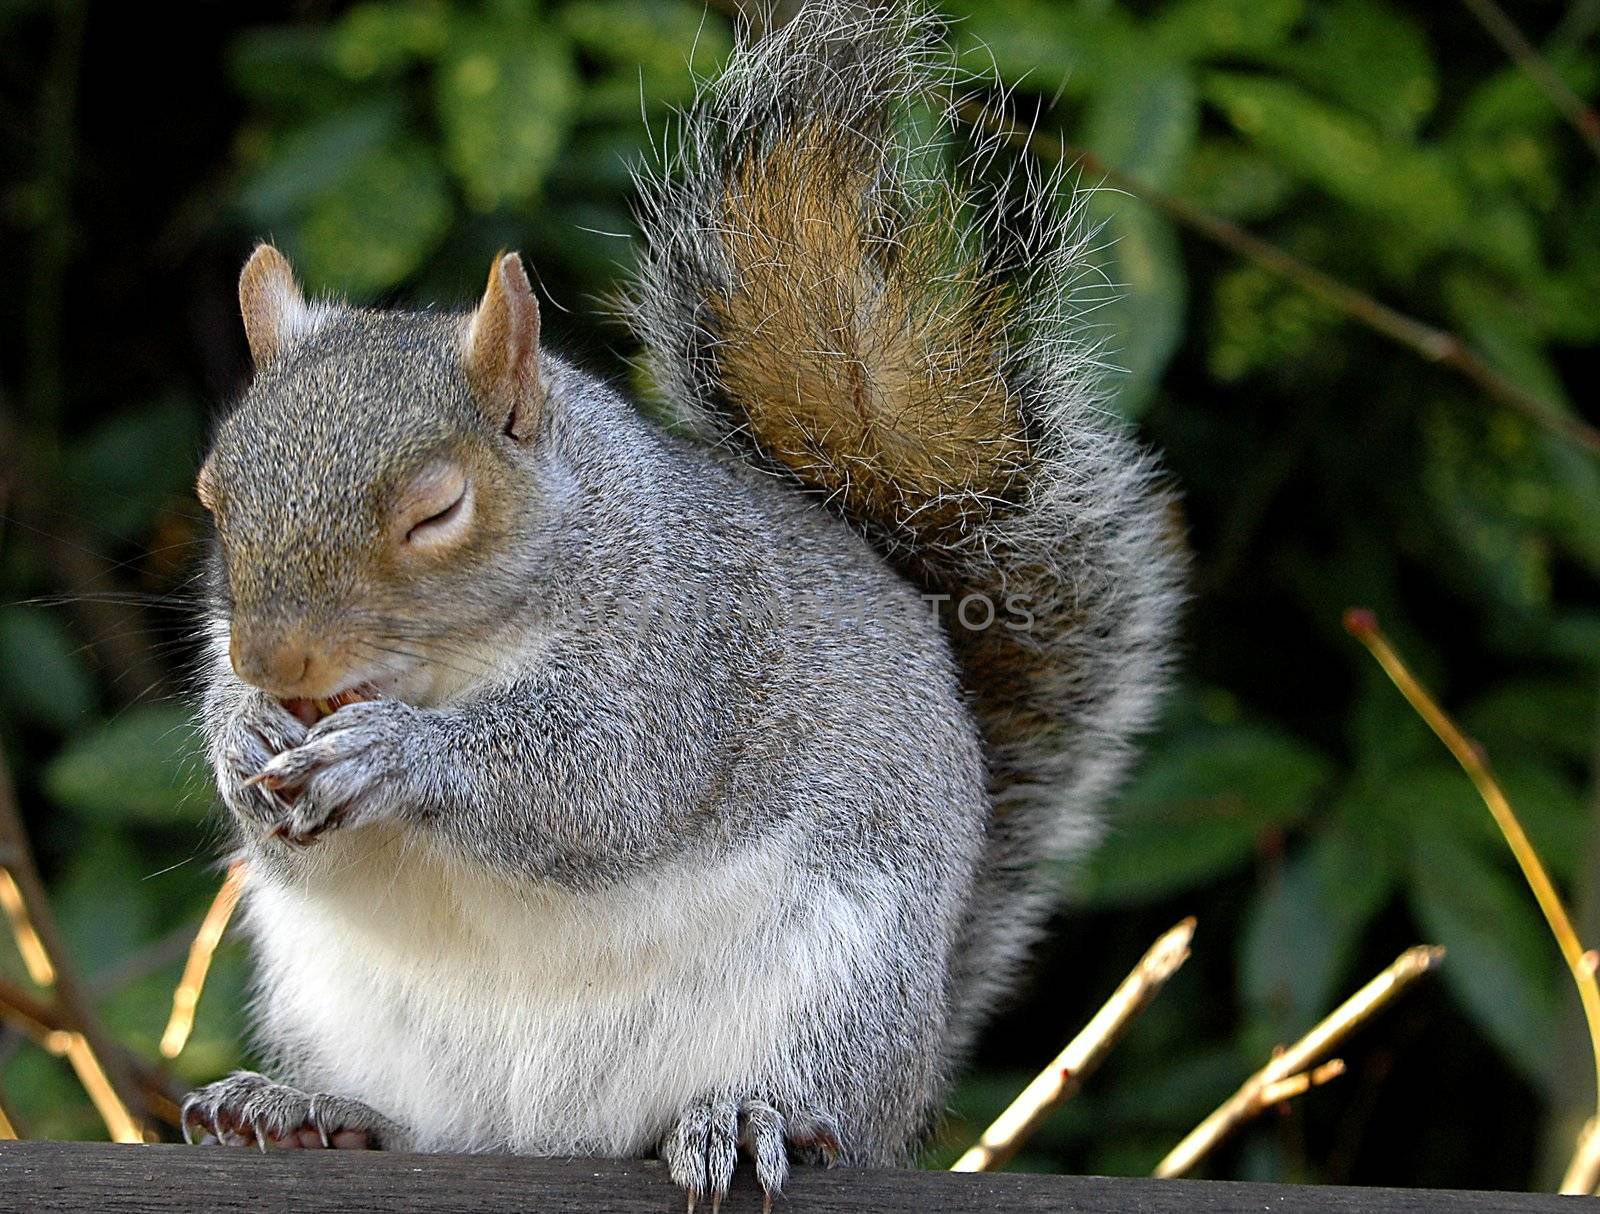 Squirrel by kobby_dagan